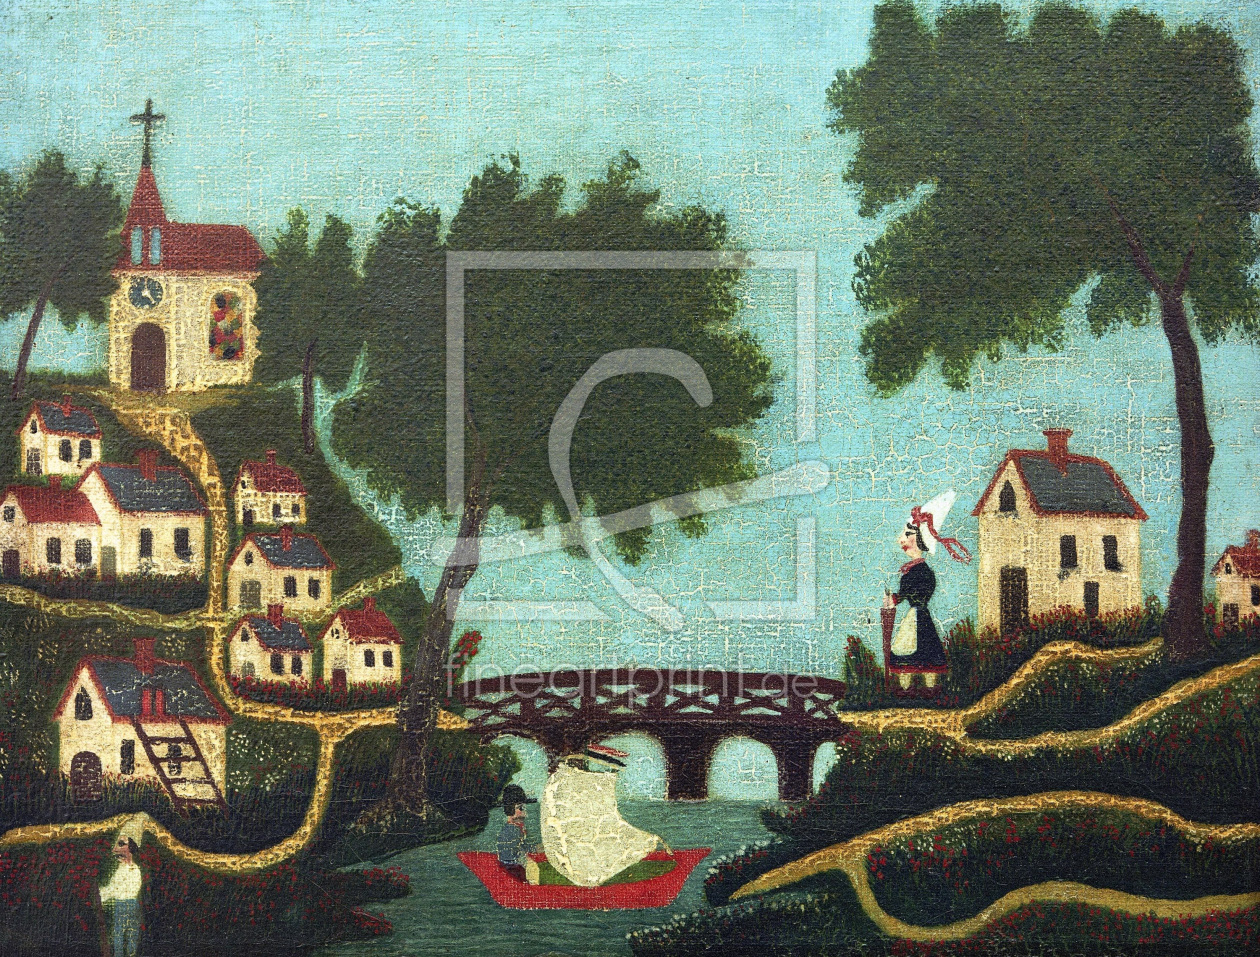 Bild-Nr.: 30007280 H.Rousseau / Landcape with bridge erstellt von Rousseau, Henri Julien Felix